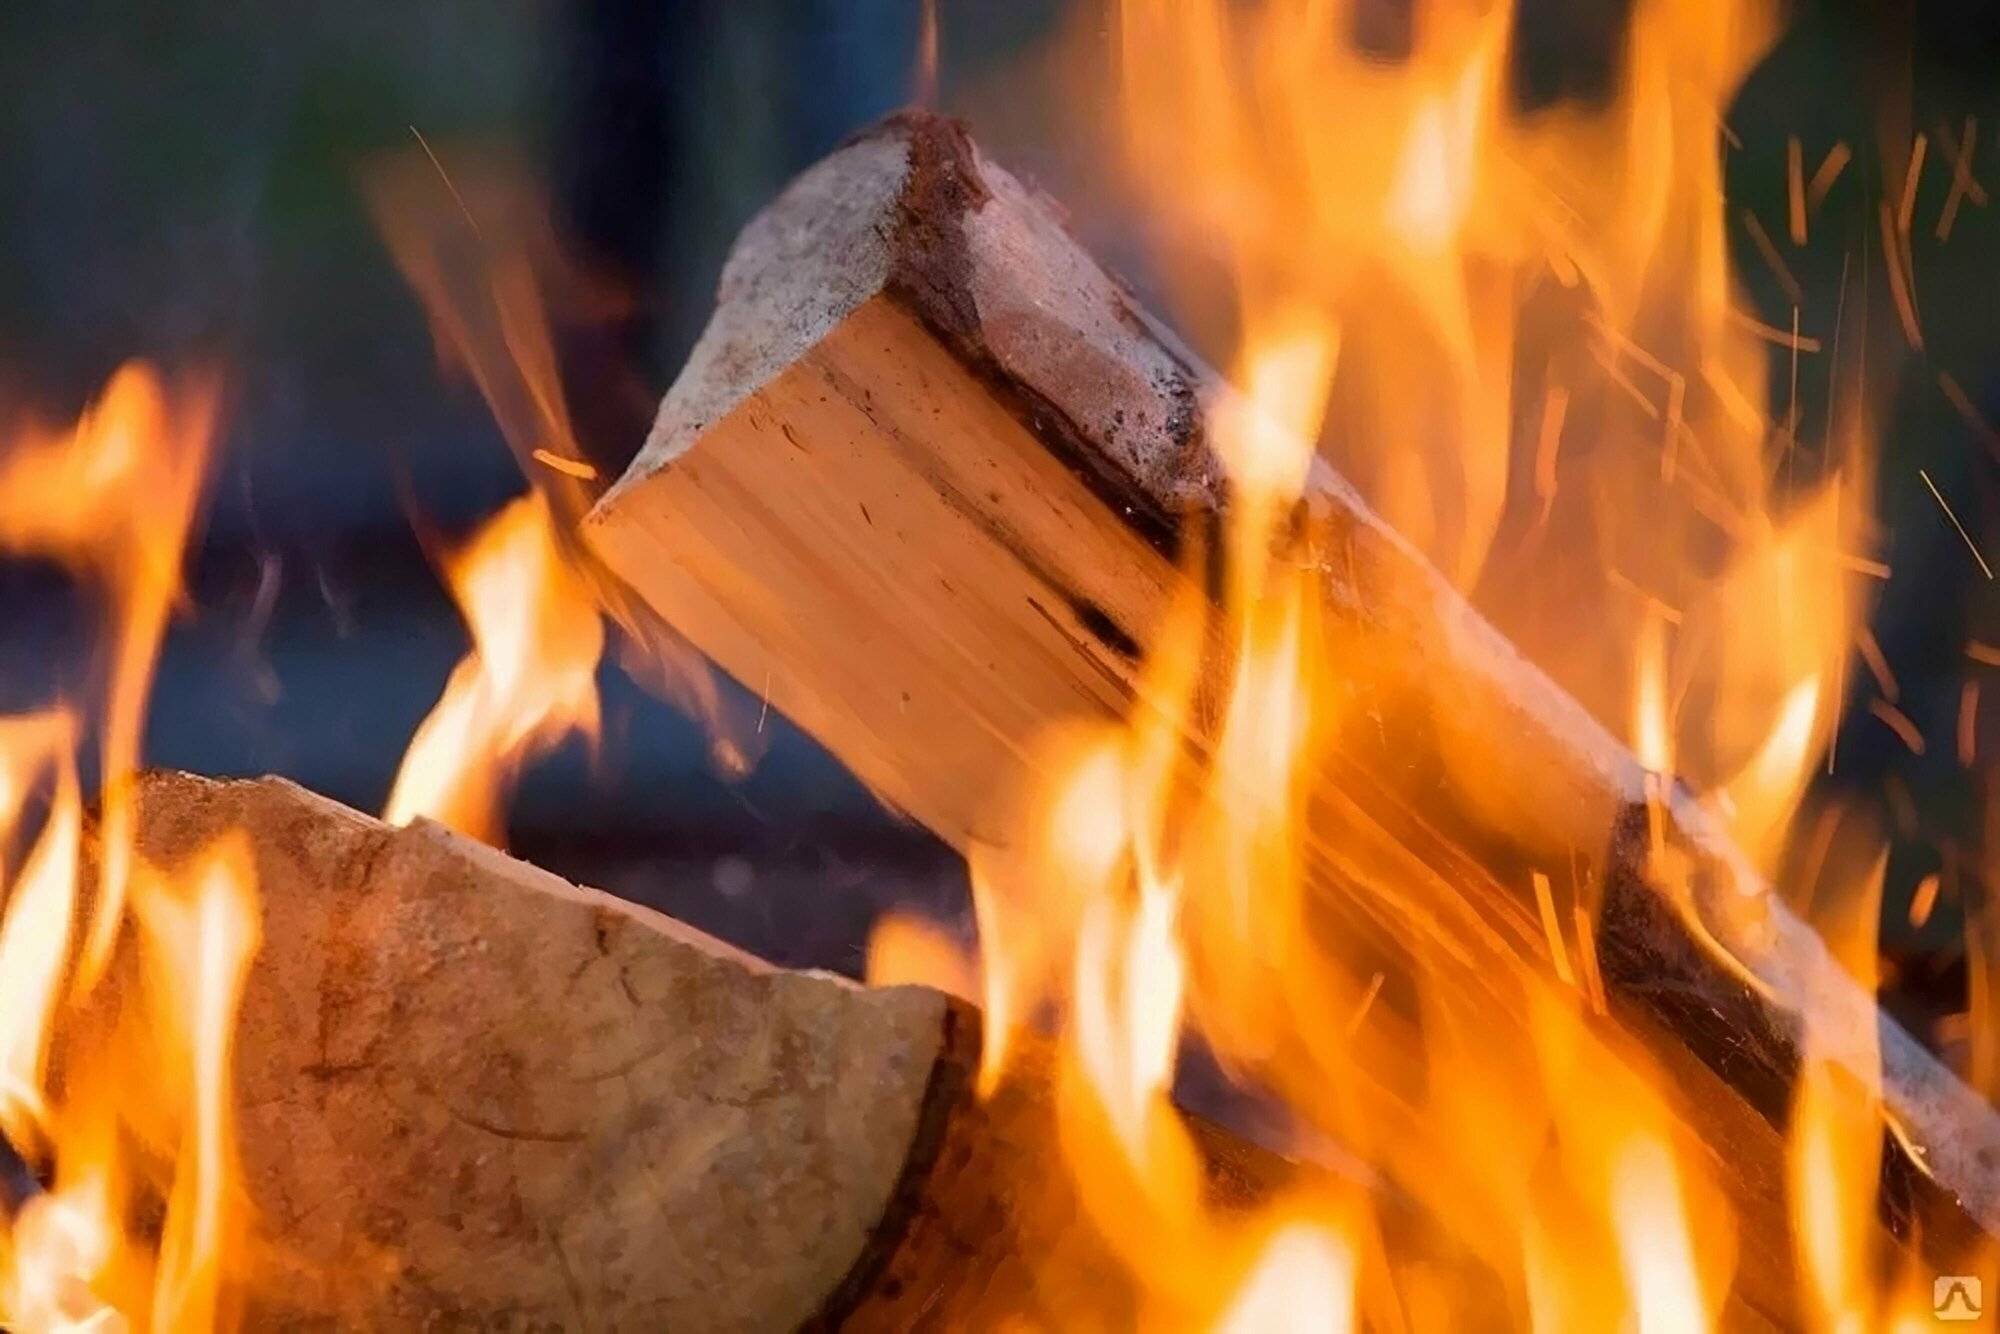 Жидкость для розжига 0,2л углеводородная (2 шт) - для любителей отдыха на природе. Для розжига дров, древесного угля и брикетов в мангалах, печах и каминах.